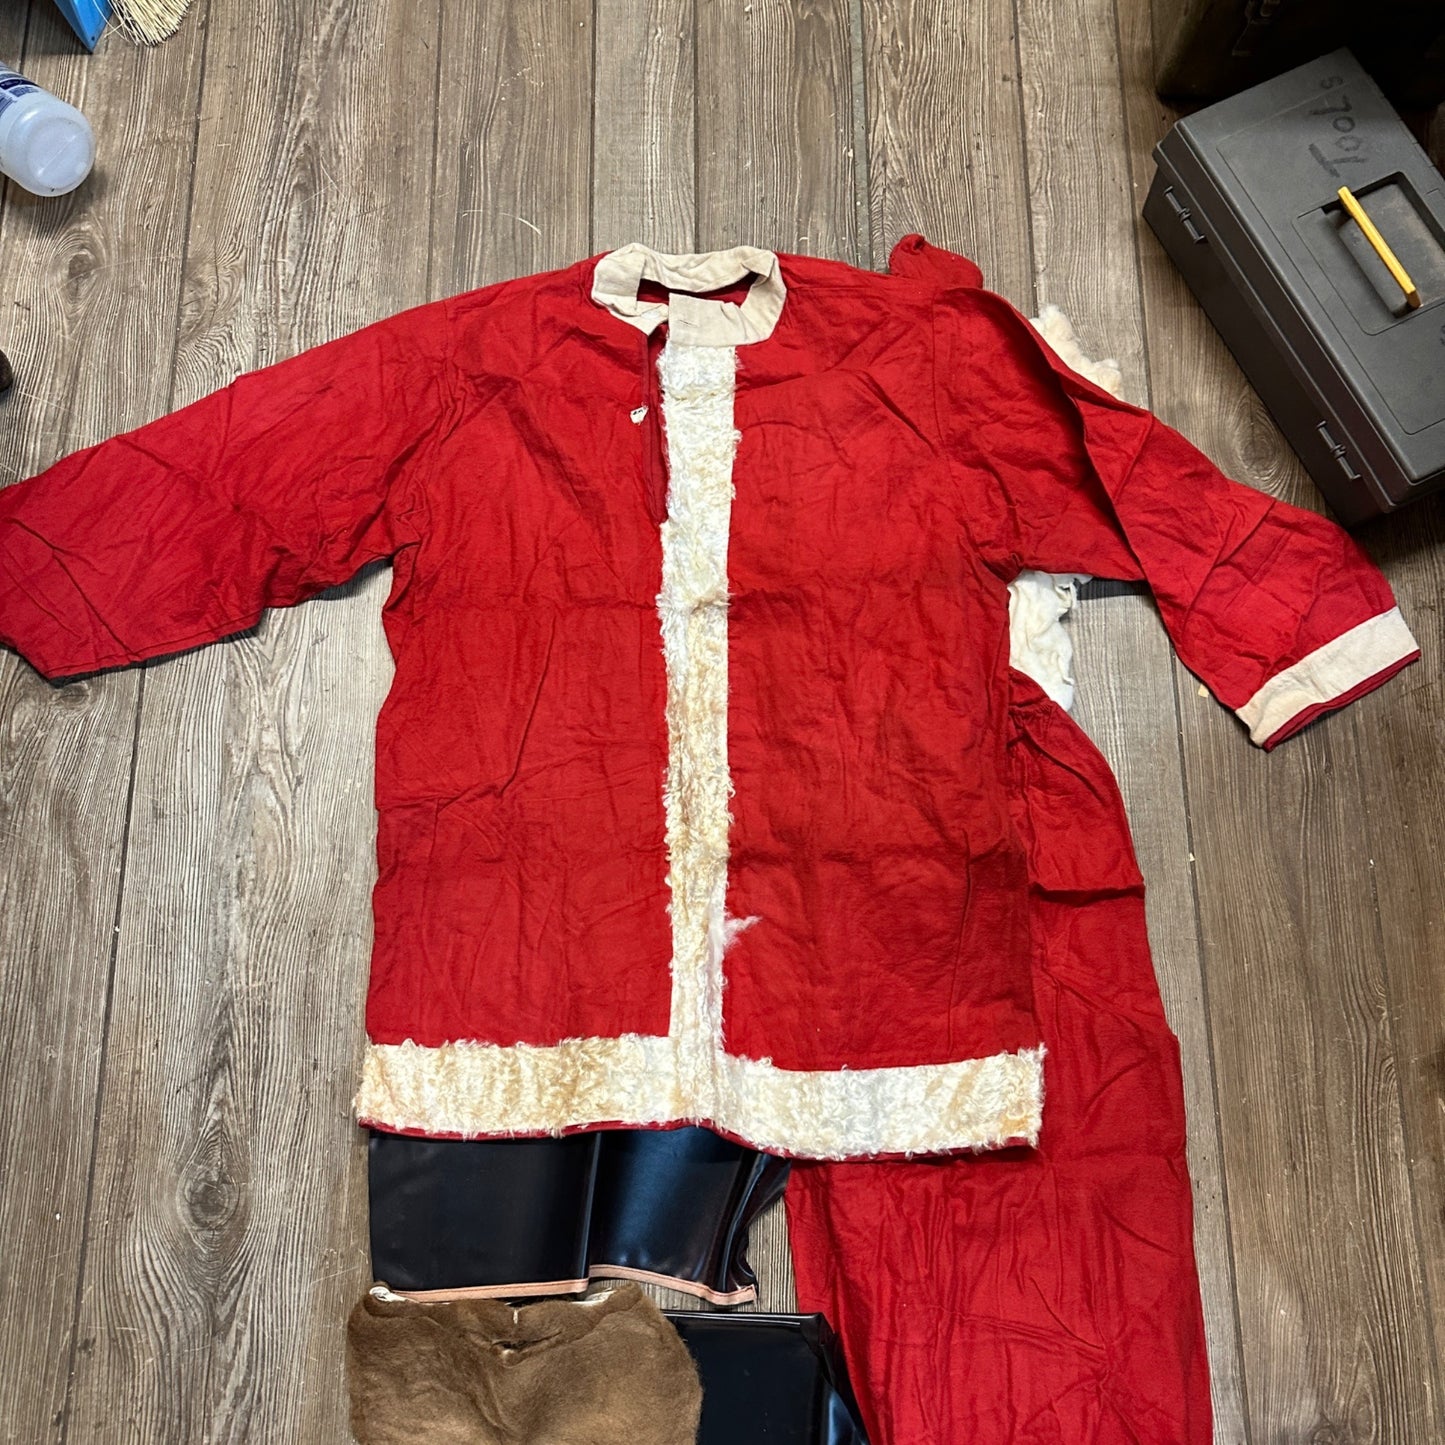 Vintage 1950s Christmas Santa Claus Suit Ben Cooper Costume Size XL w/ Box